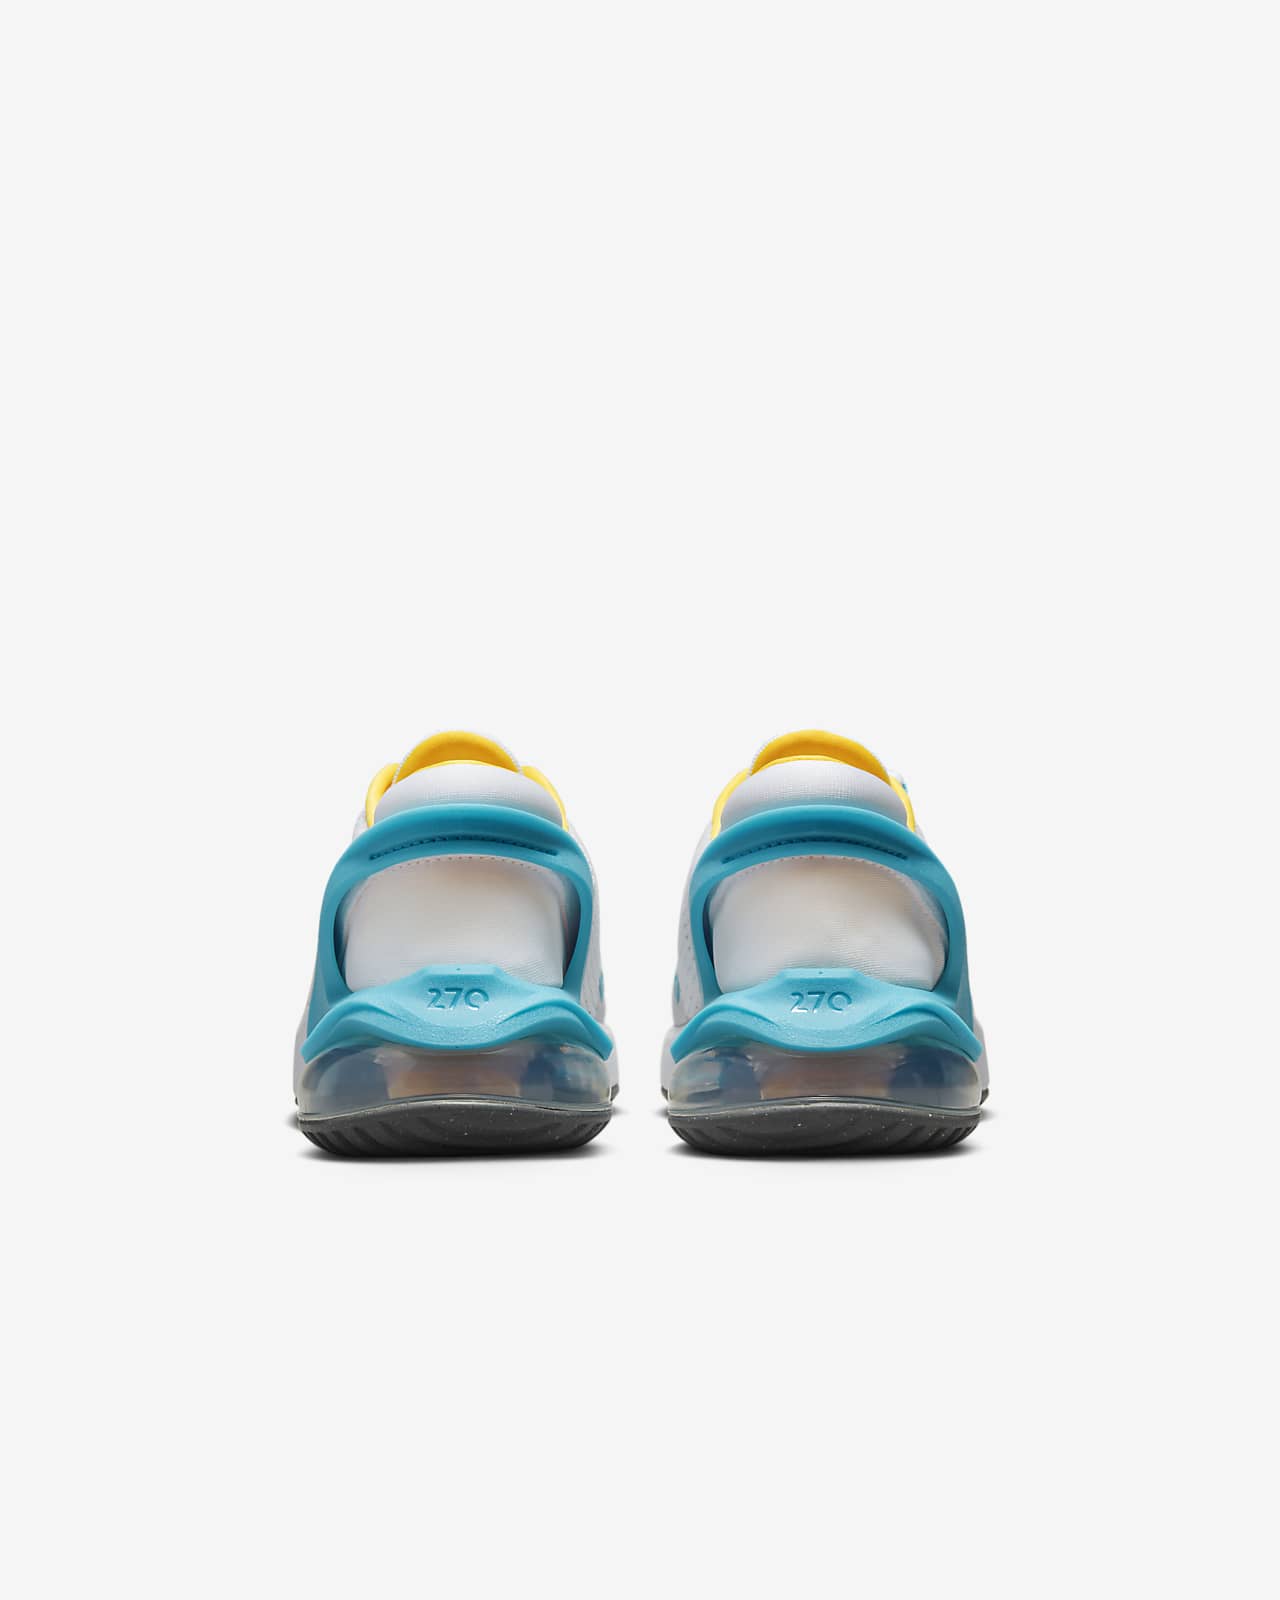 Nike Air Max 270 Little Kids' Shoe.